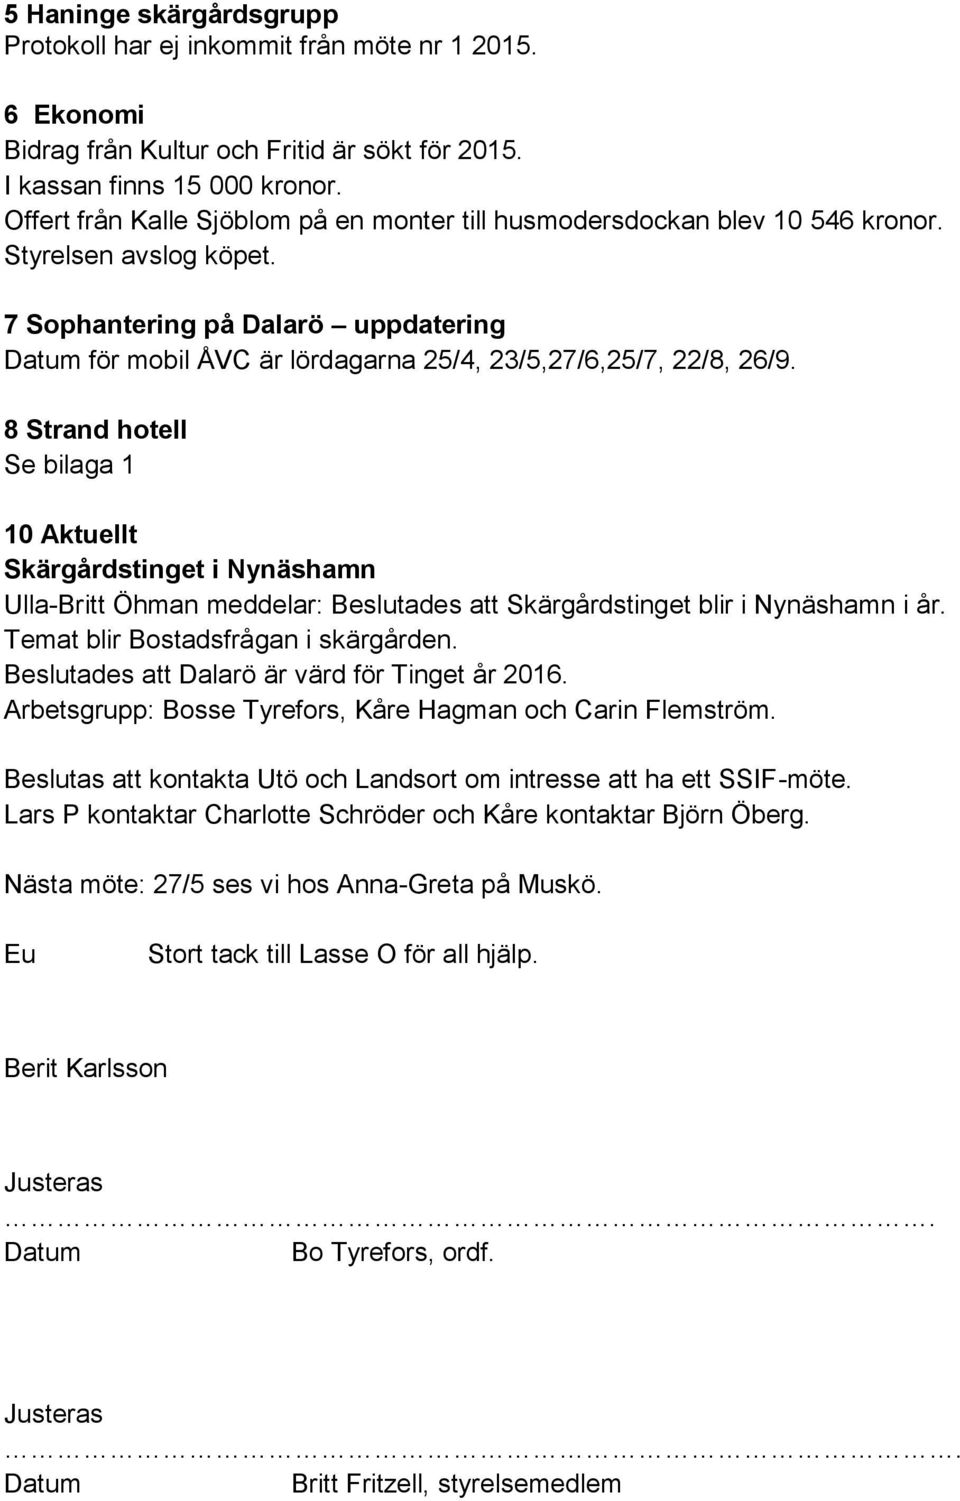 7 Sophantering på Dalarö uppdatering Datum för mobil ÅVC är lördagarna 25/4, 23/5,27/6,25/7, 22/8, 26/9.